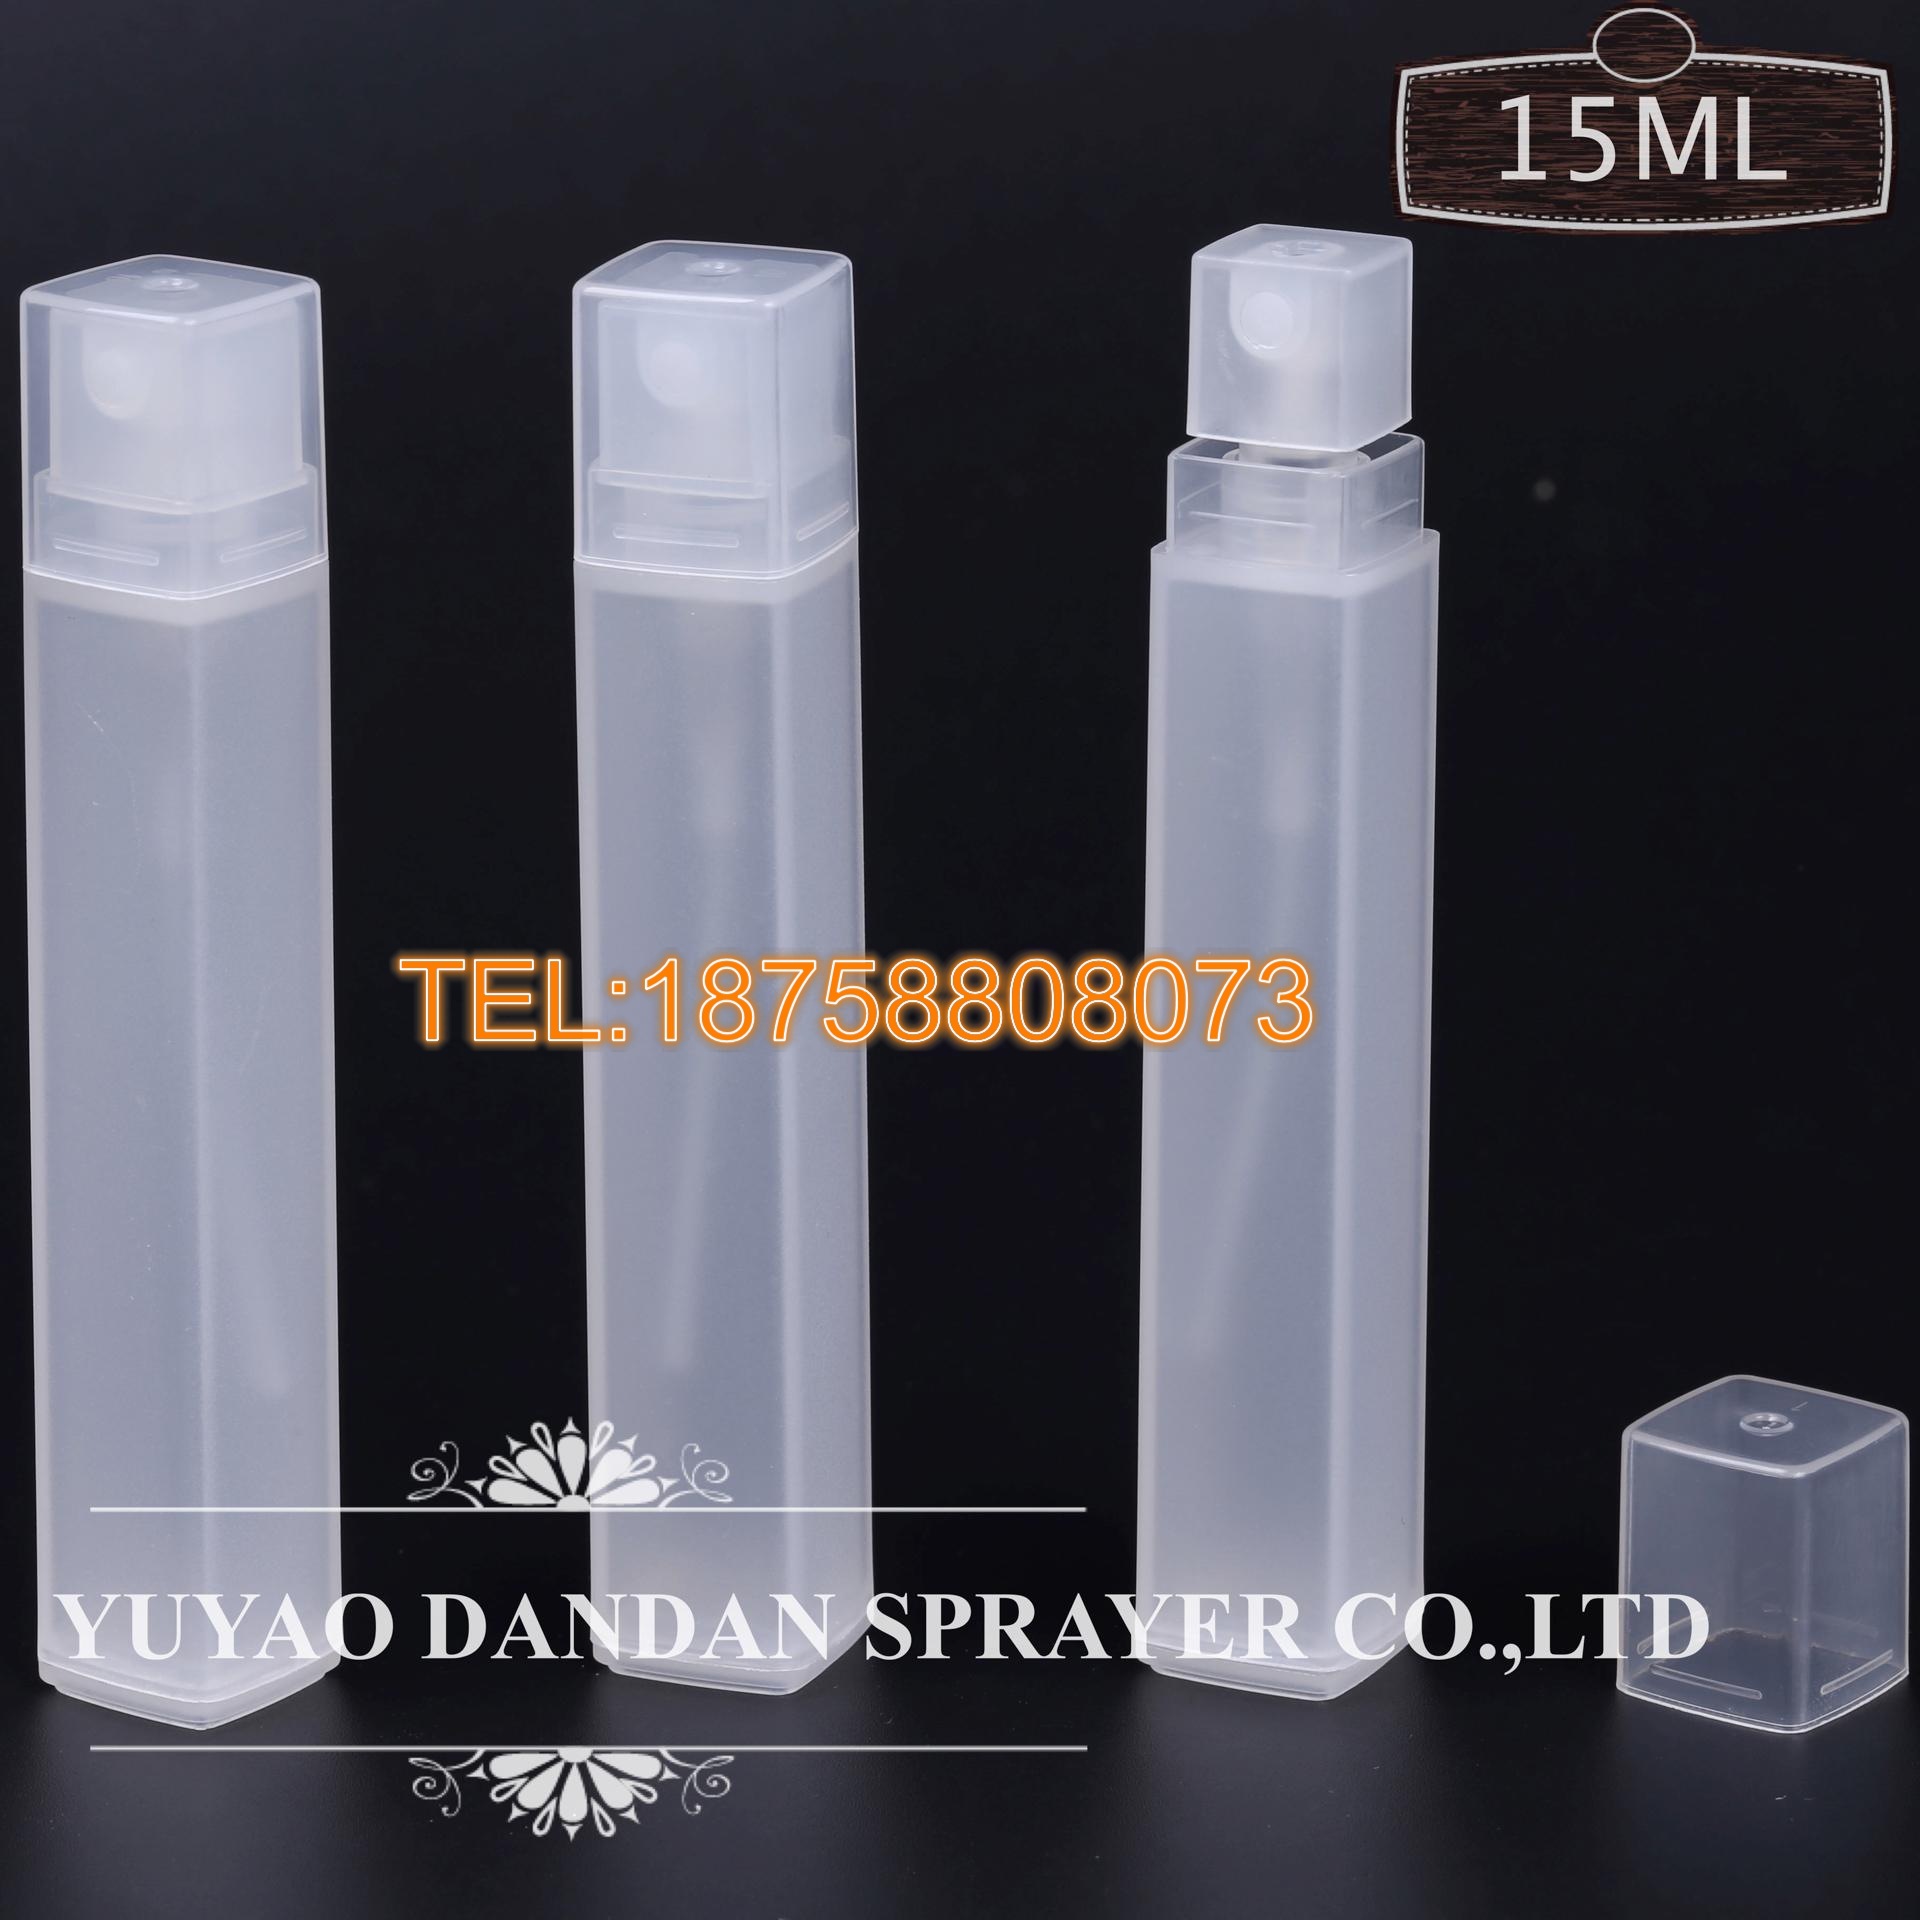 厂家直销10ml 15ml新款方管喷雾瓶 卡口塑料香水瓶塑料香水喷雾瓶示例图2